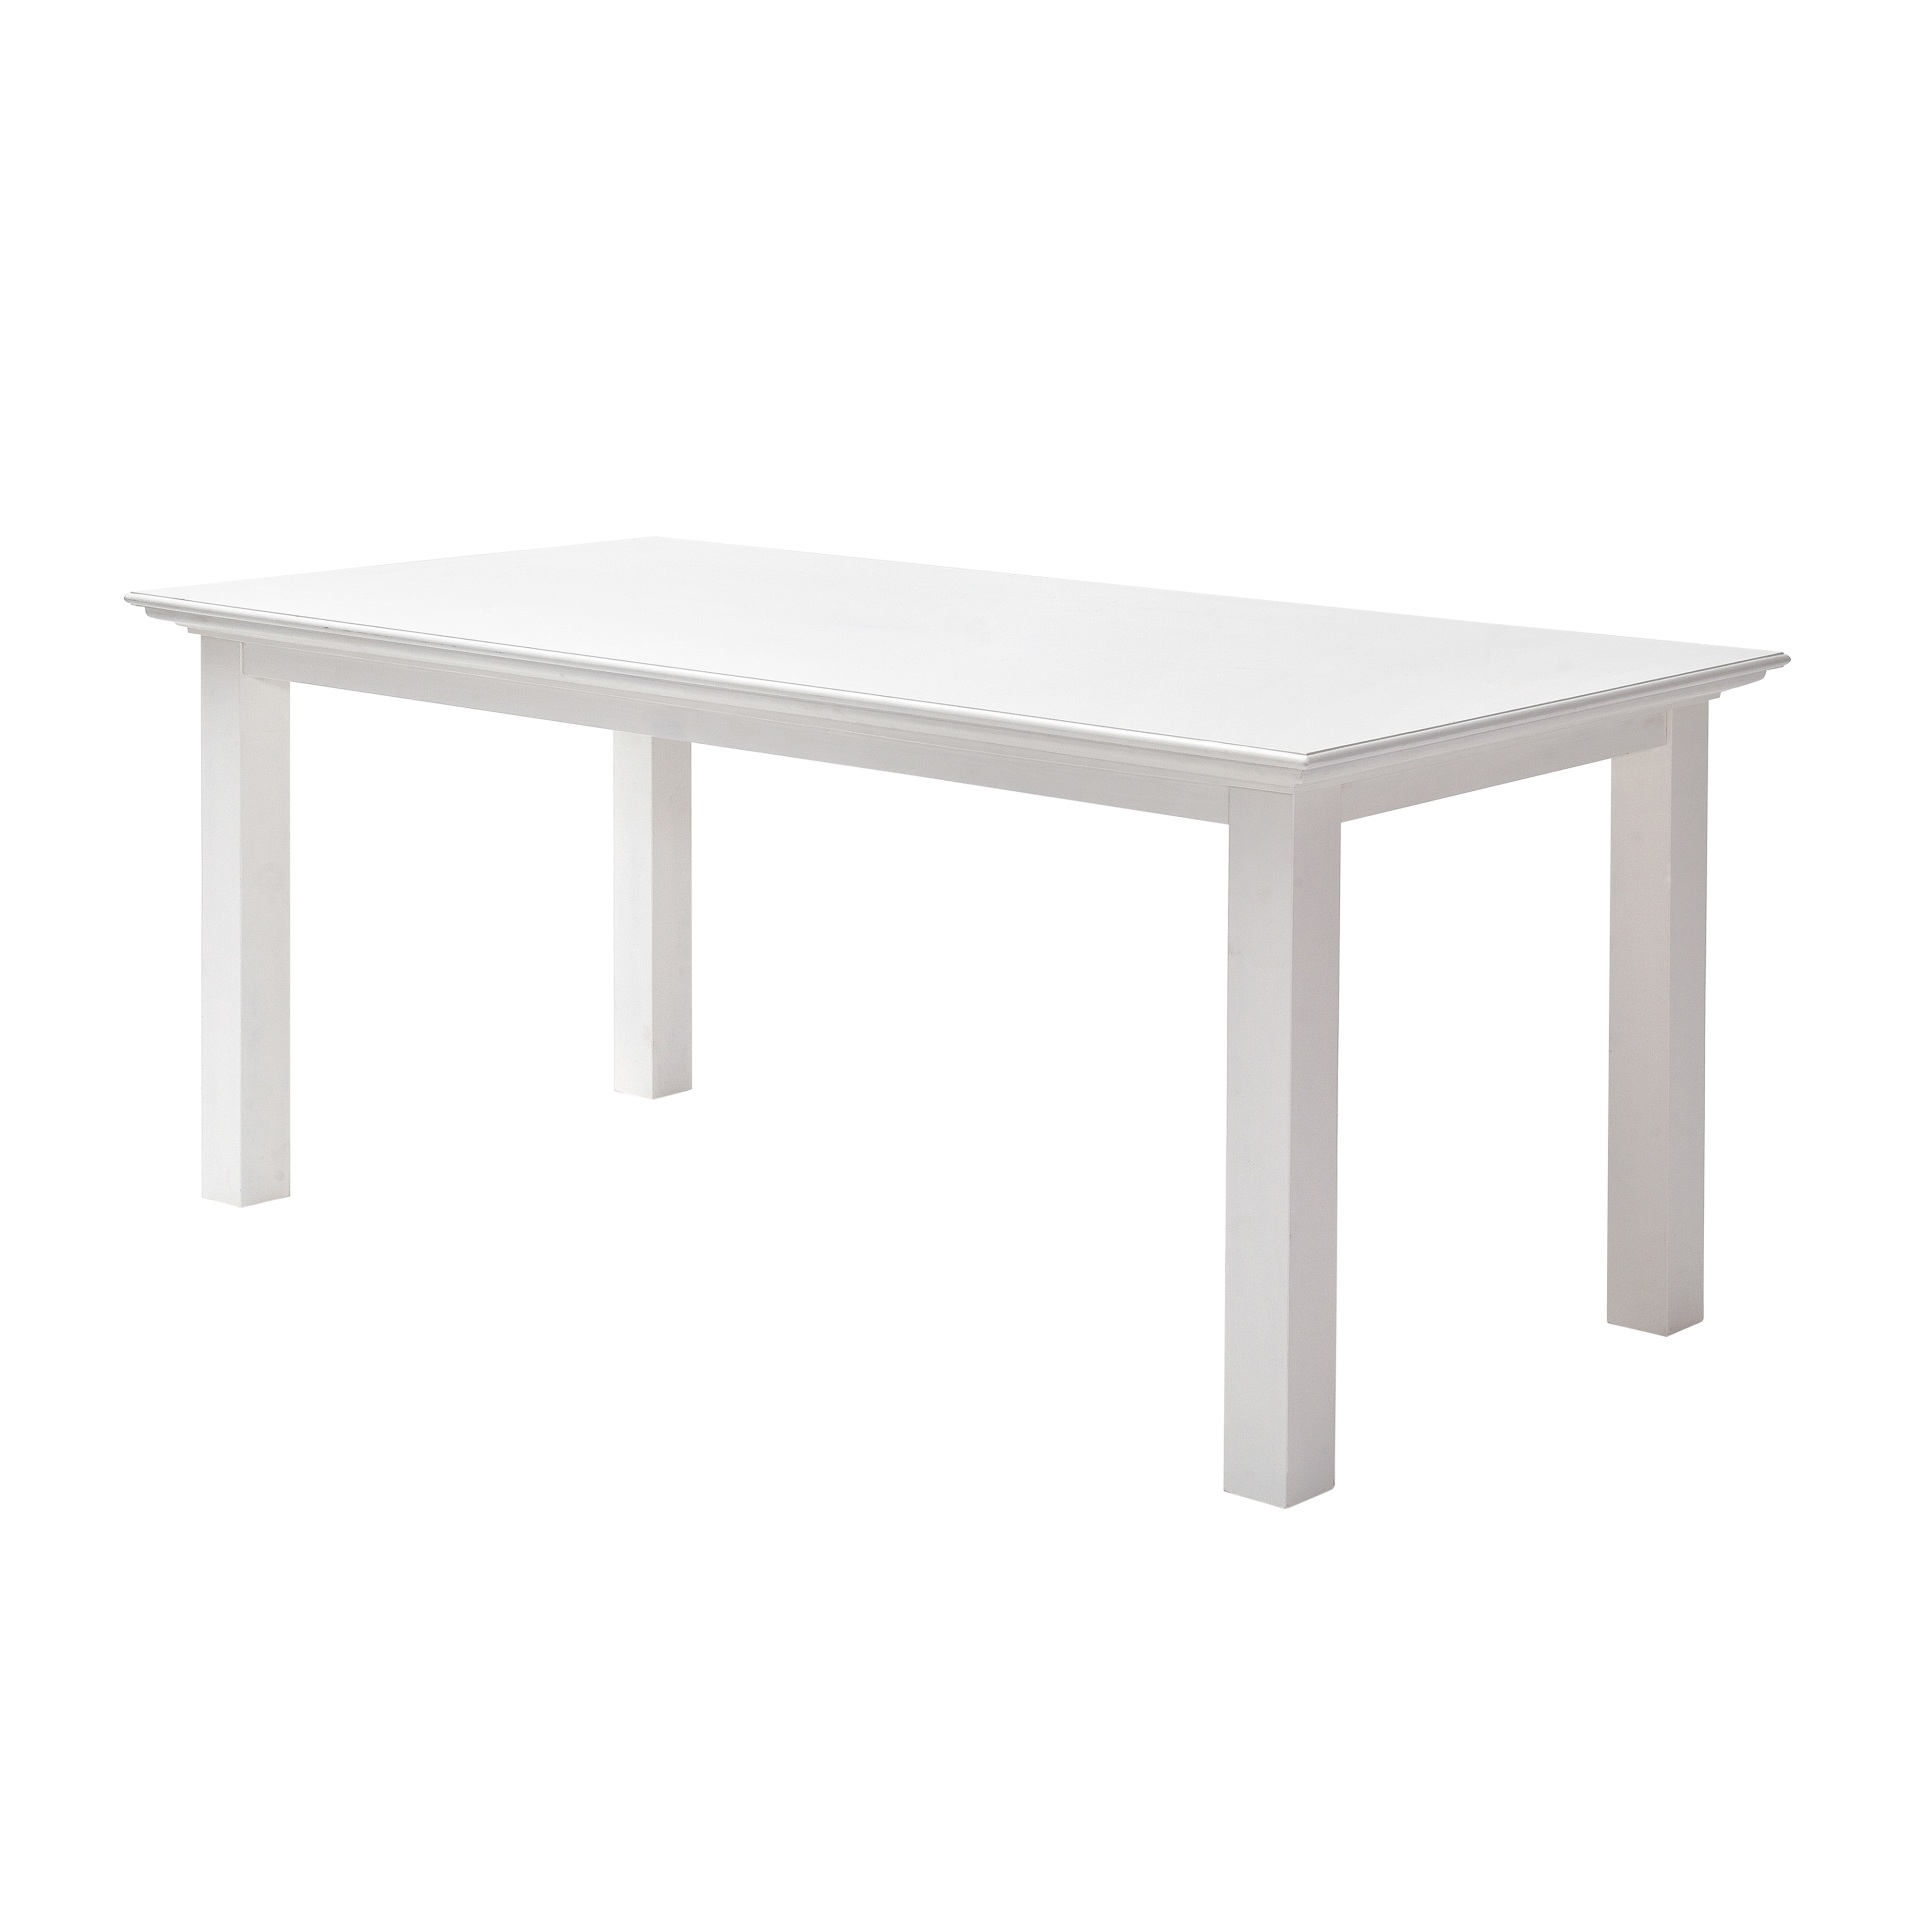 Der Esstisch Halifax überzeugt mit seinem Landhaus Stil. Gefertigt wurde er aus Mahagoni Holz, welches einen weißen Farbton besitzt. Der Tisch besitzt eine Breite von 200 cm.